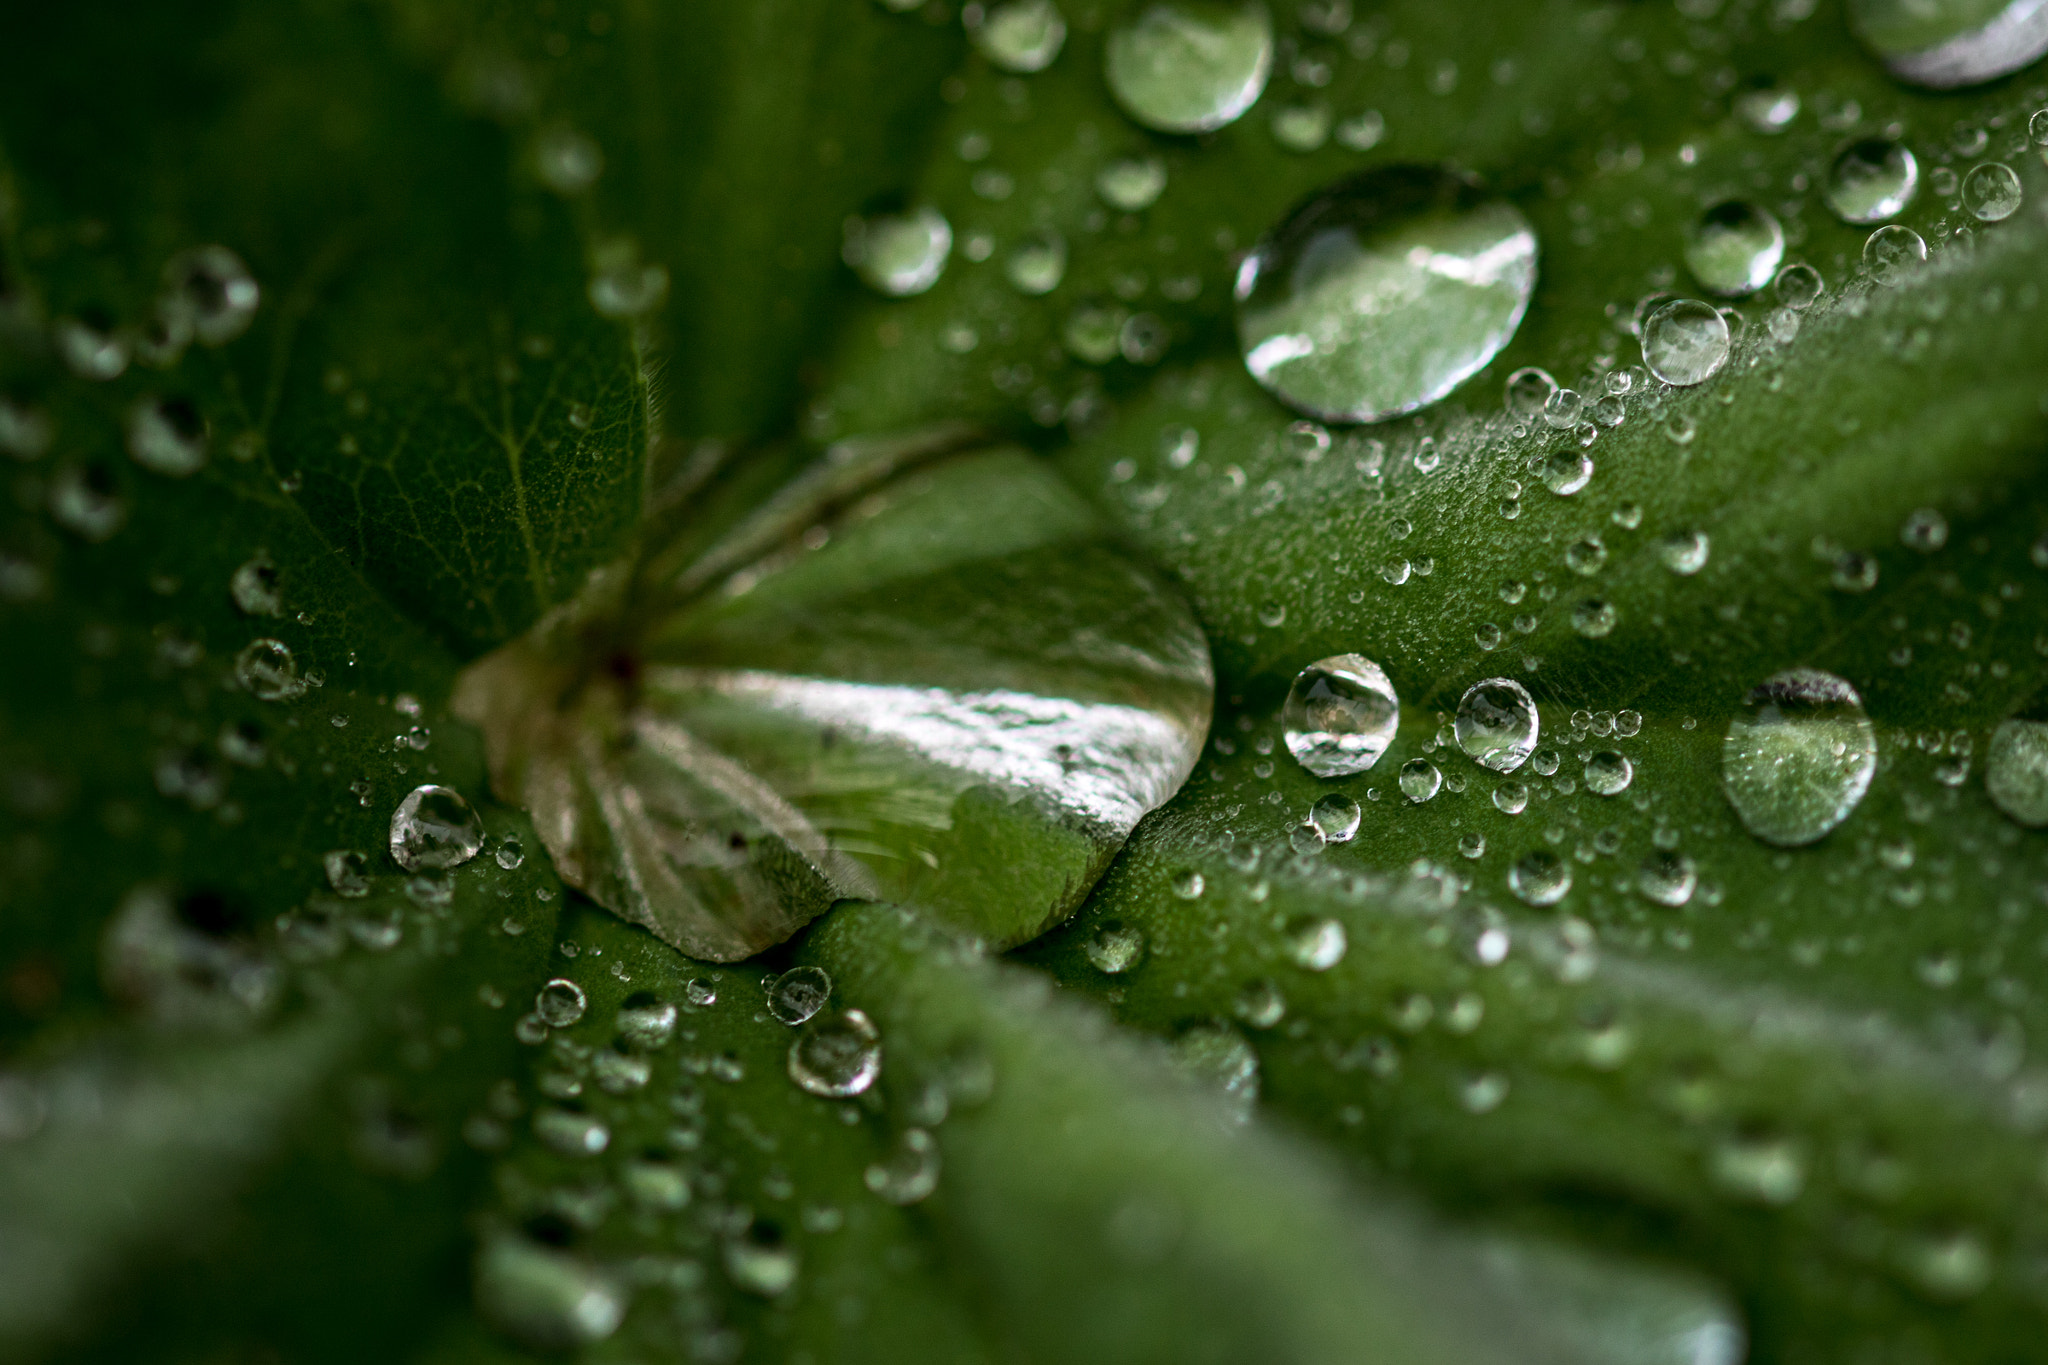 Canon EOS 7D Mark II sample photo. Rainy leaf photography